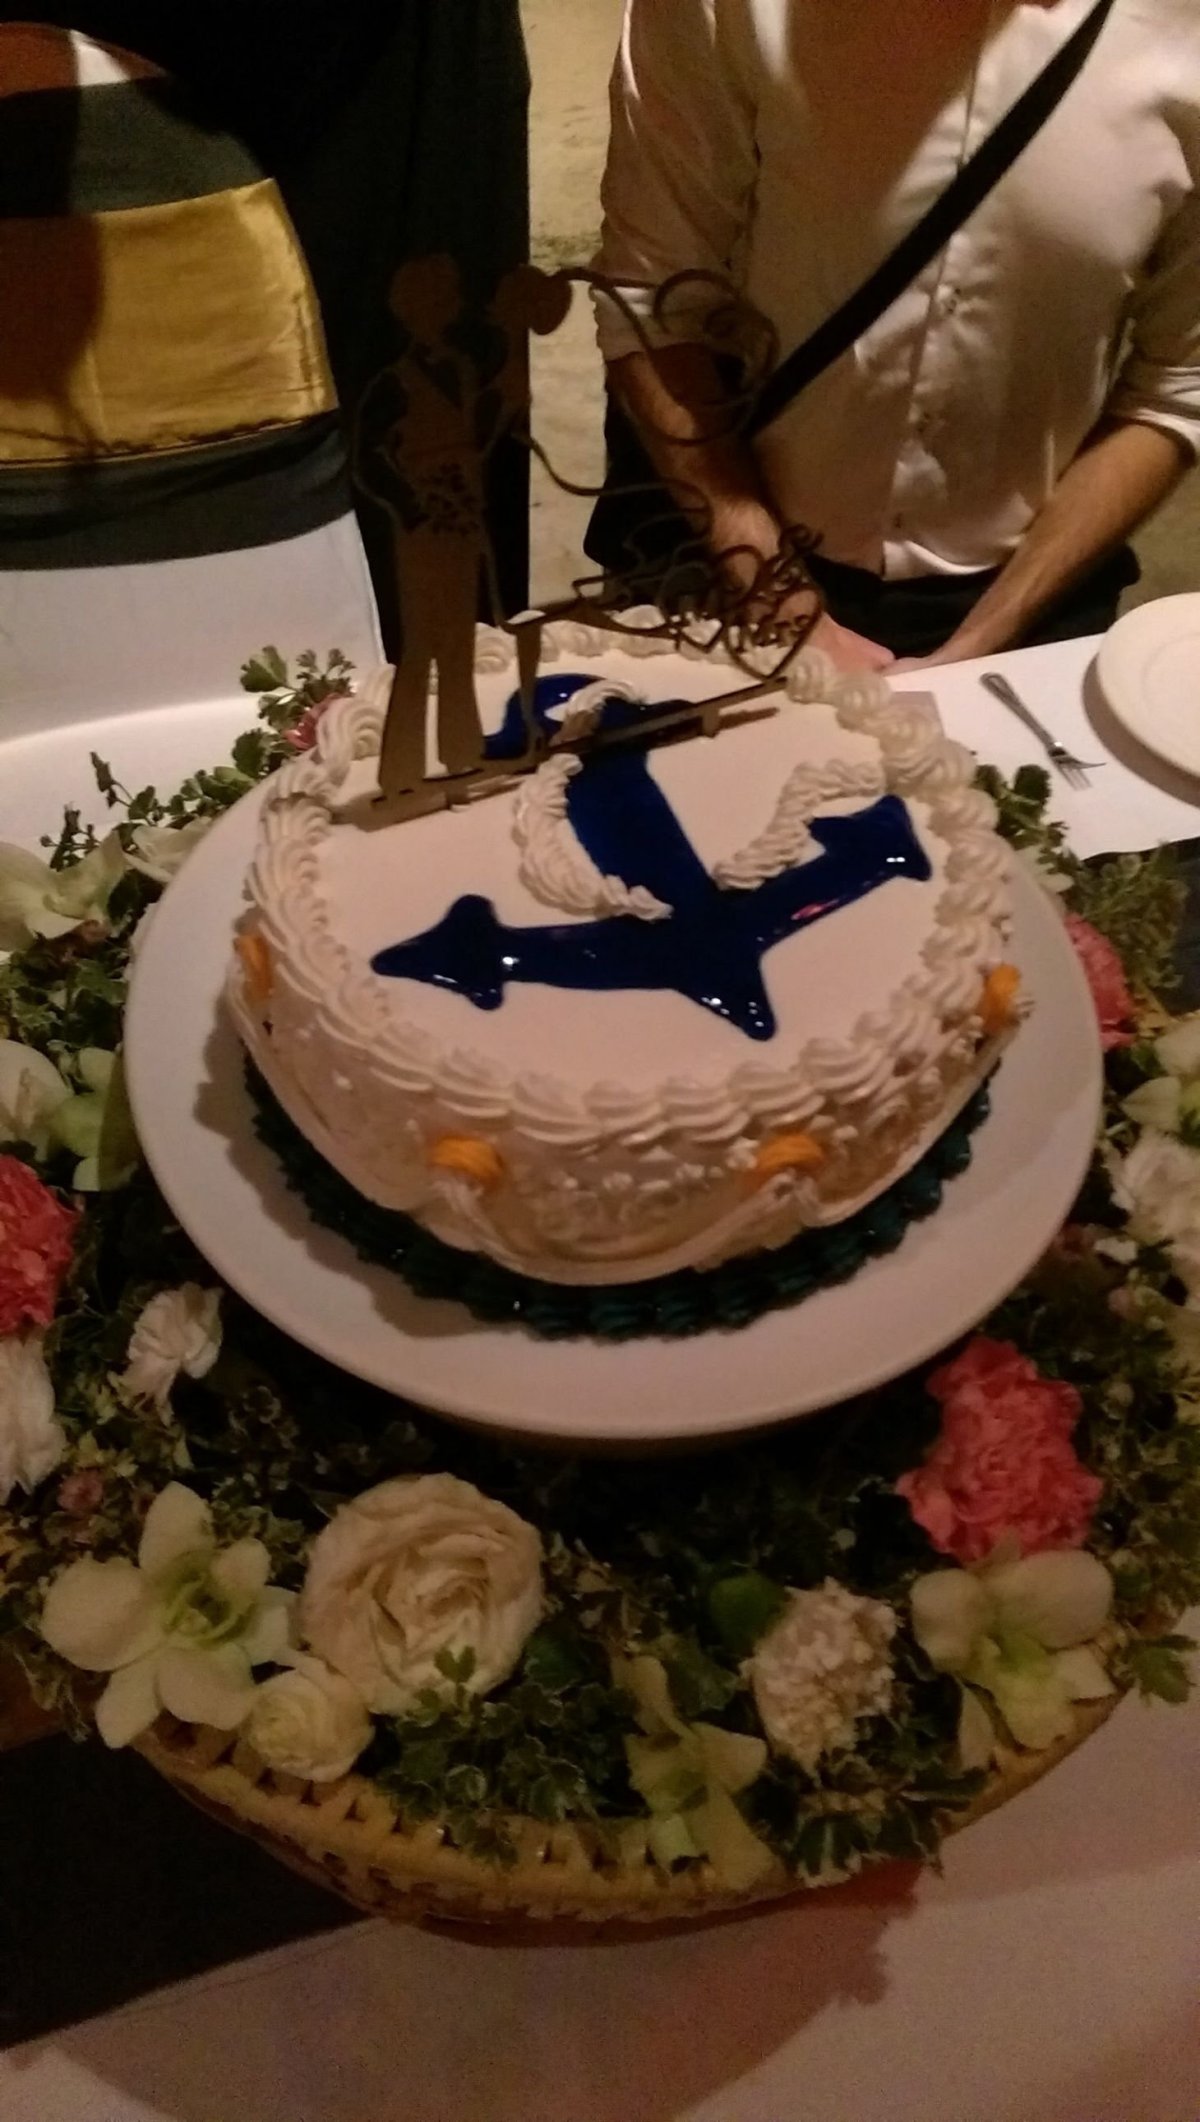 Svatební dort chutnal lépe než vypadal